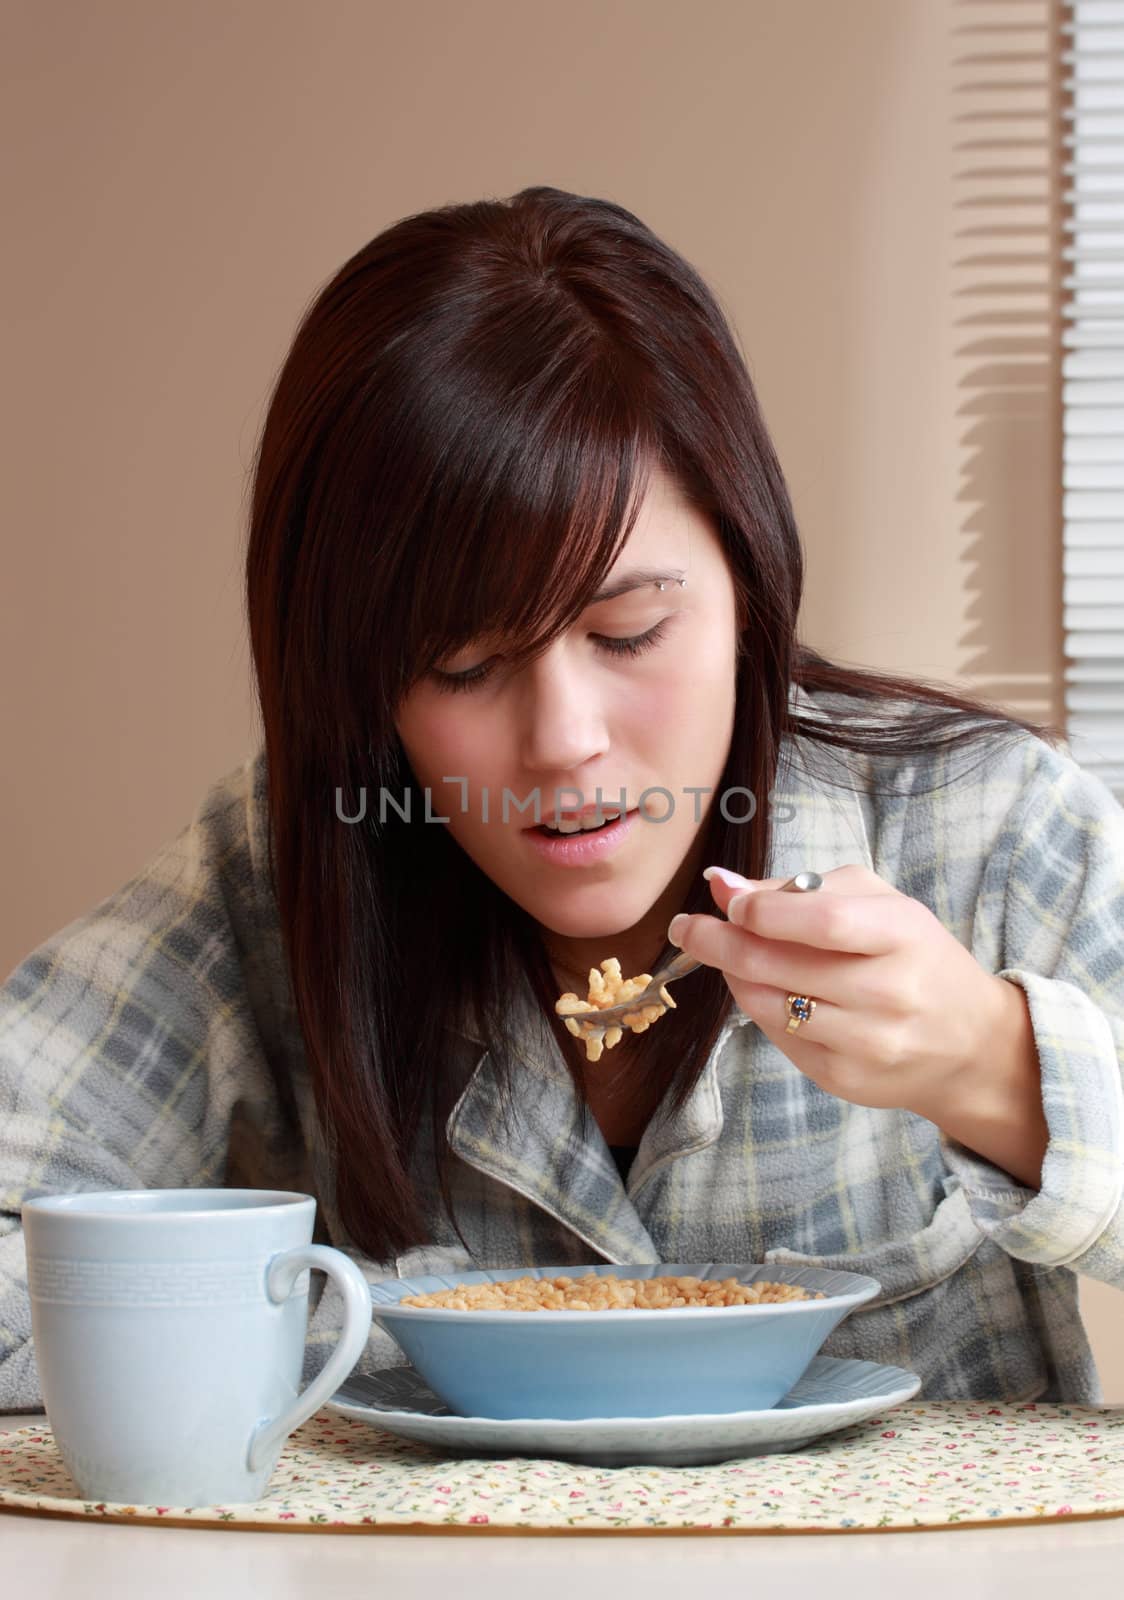 girl having breakfast by lanalanglois